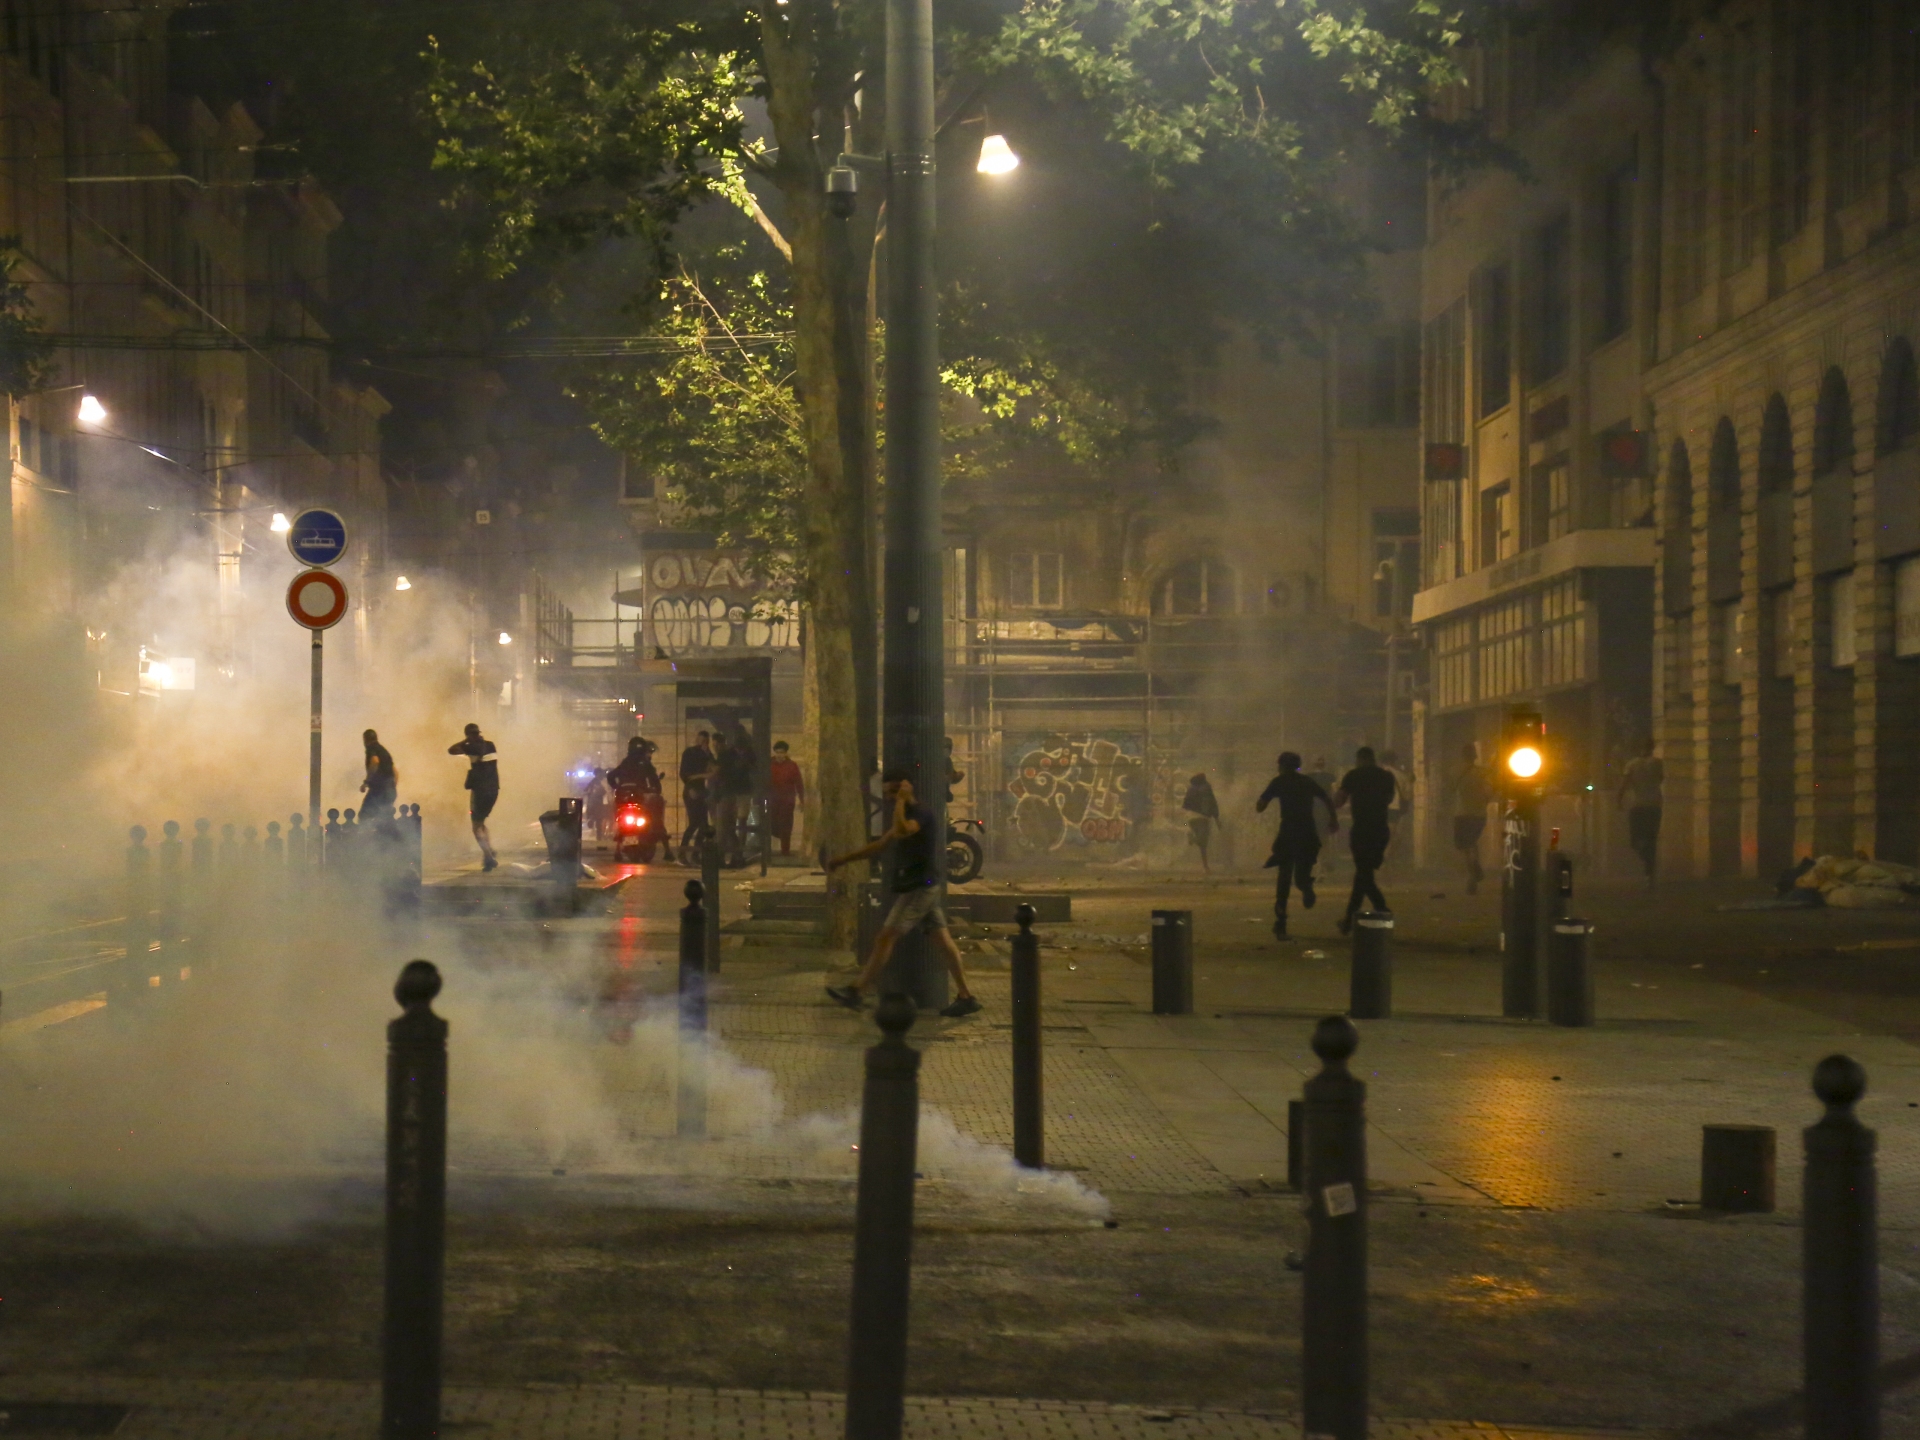 تطبيق الحظر الليلي بـ 40 مدينة في فرنسا وتراجع لحدة العنف بعد تشييع الشاب "نائل"